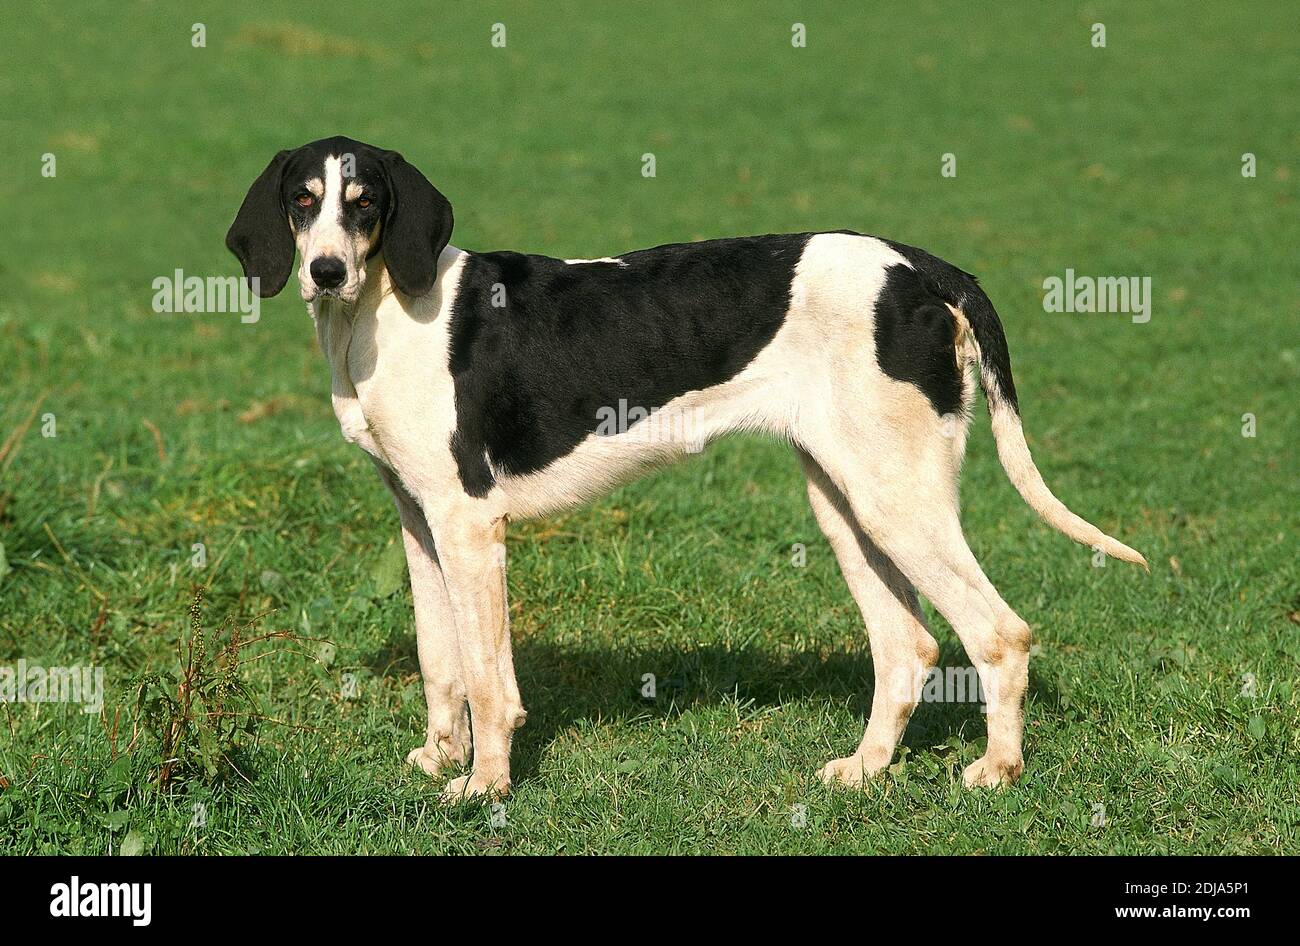 Großer anglo-französischen weißen und schwarzen Hund, Hund stehend auf dem Rasen Stockfoto